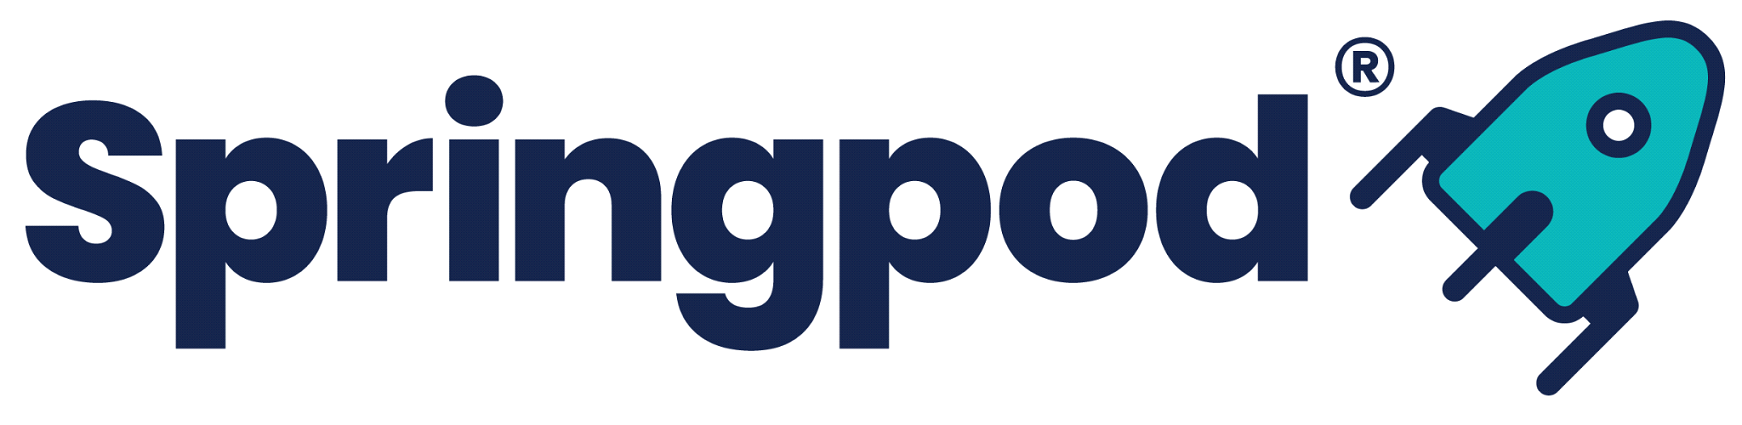 Springpod Logo Edge